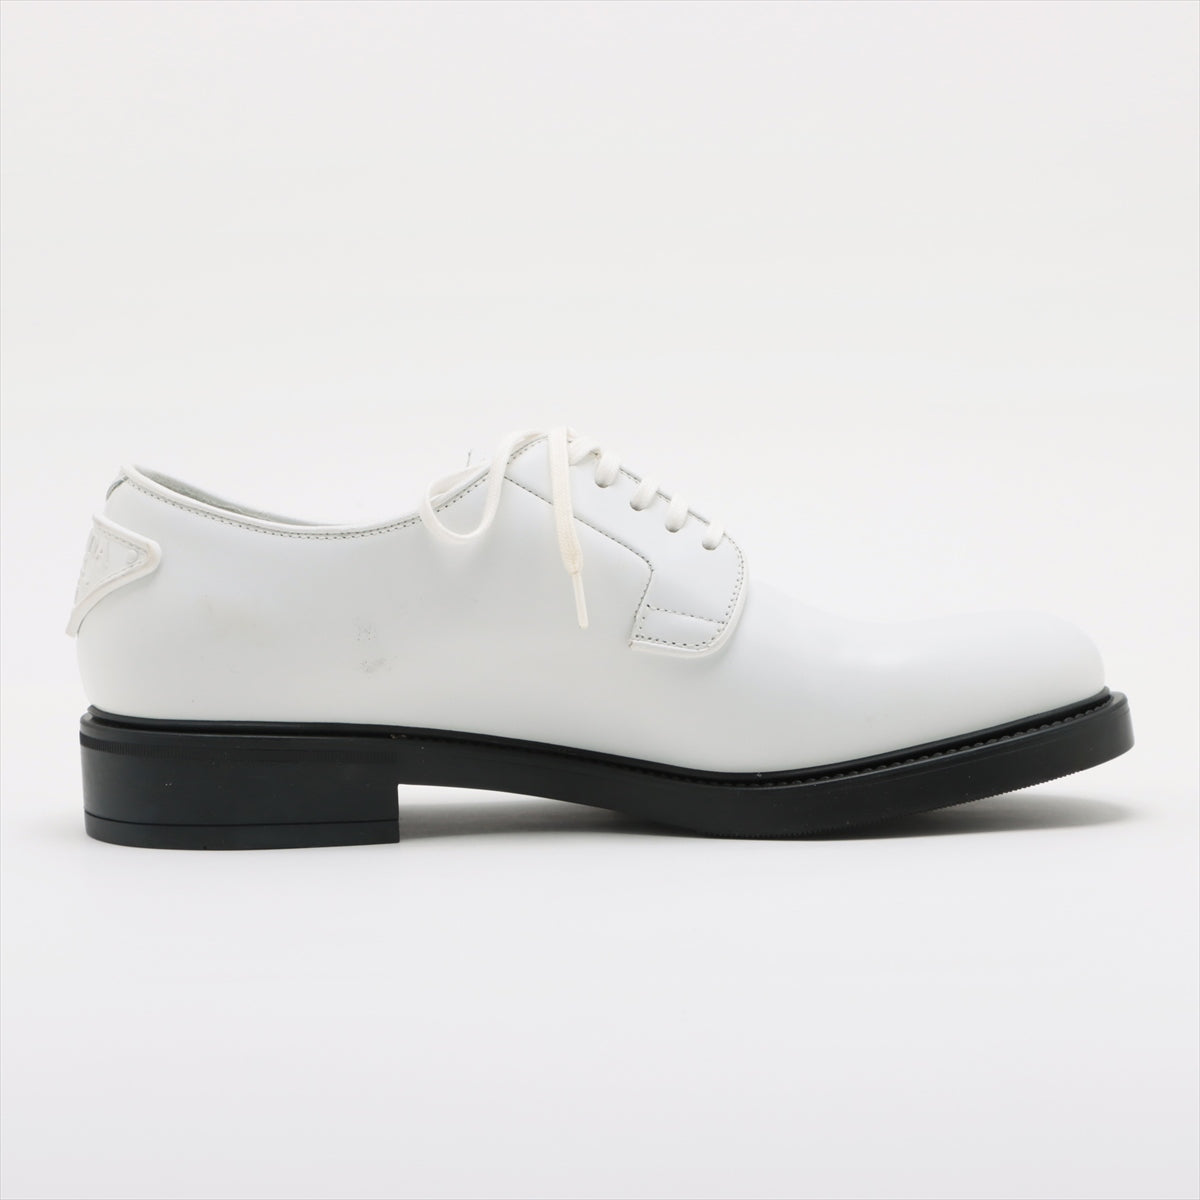 Prada Leather Leather shoes 5 1/2 Men's White 2EG394 Logo